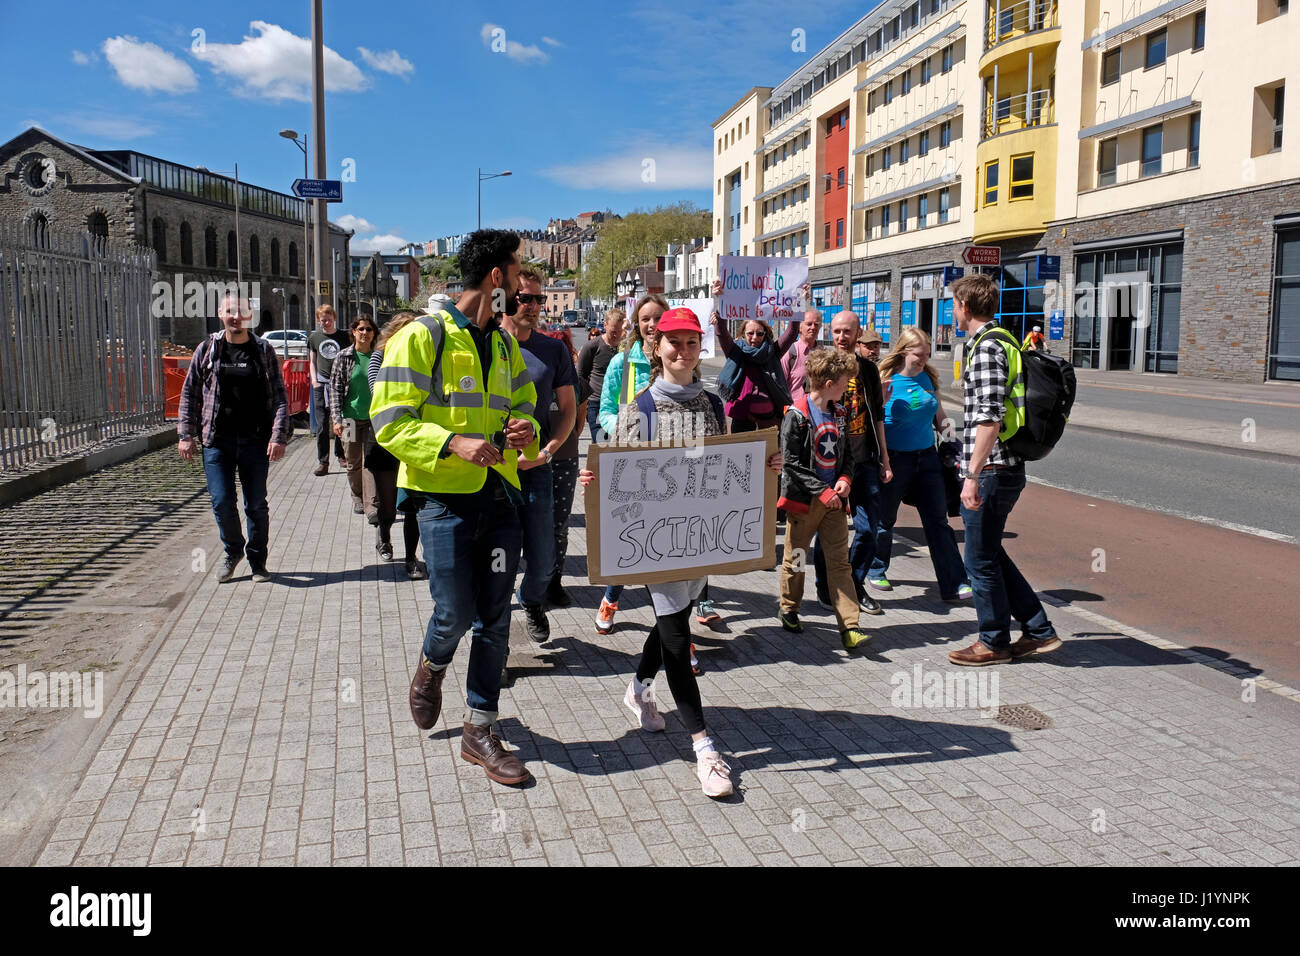 Bristol, Royaume-Uni. 22 avril, 2017. Les protestataires prennent part à la marche de la science. La marche de la science est destiné à être la première étape d'un mouvement mondial visant à défendre le rôle de la science dans la santé, la sécurité, l'économie, et le gouvernement et fait partie d'un certain nombre d'événements similaires qui ont lieu dans les villes à travers le monde. Keith Ramsey/Alamy Live News Banque D'Images